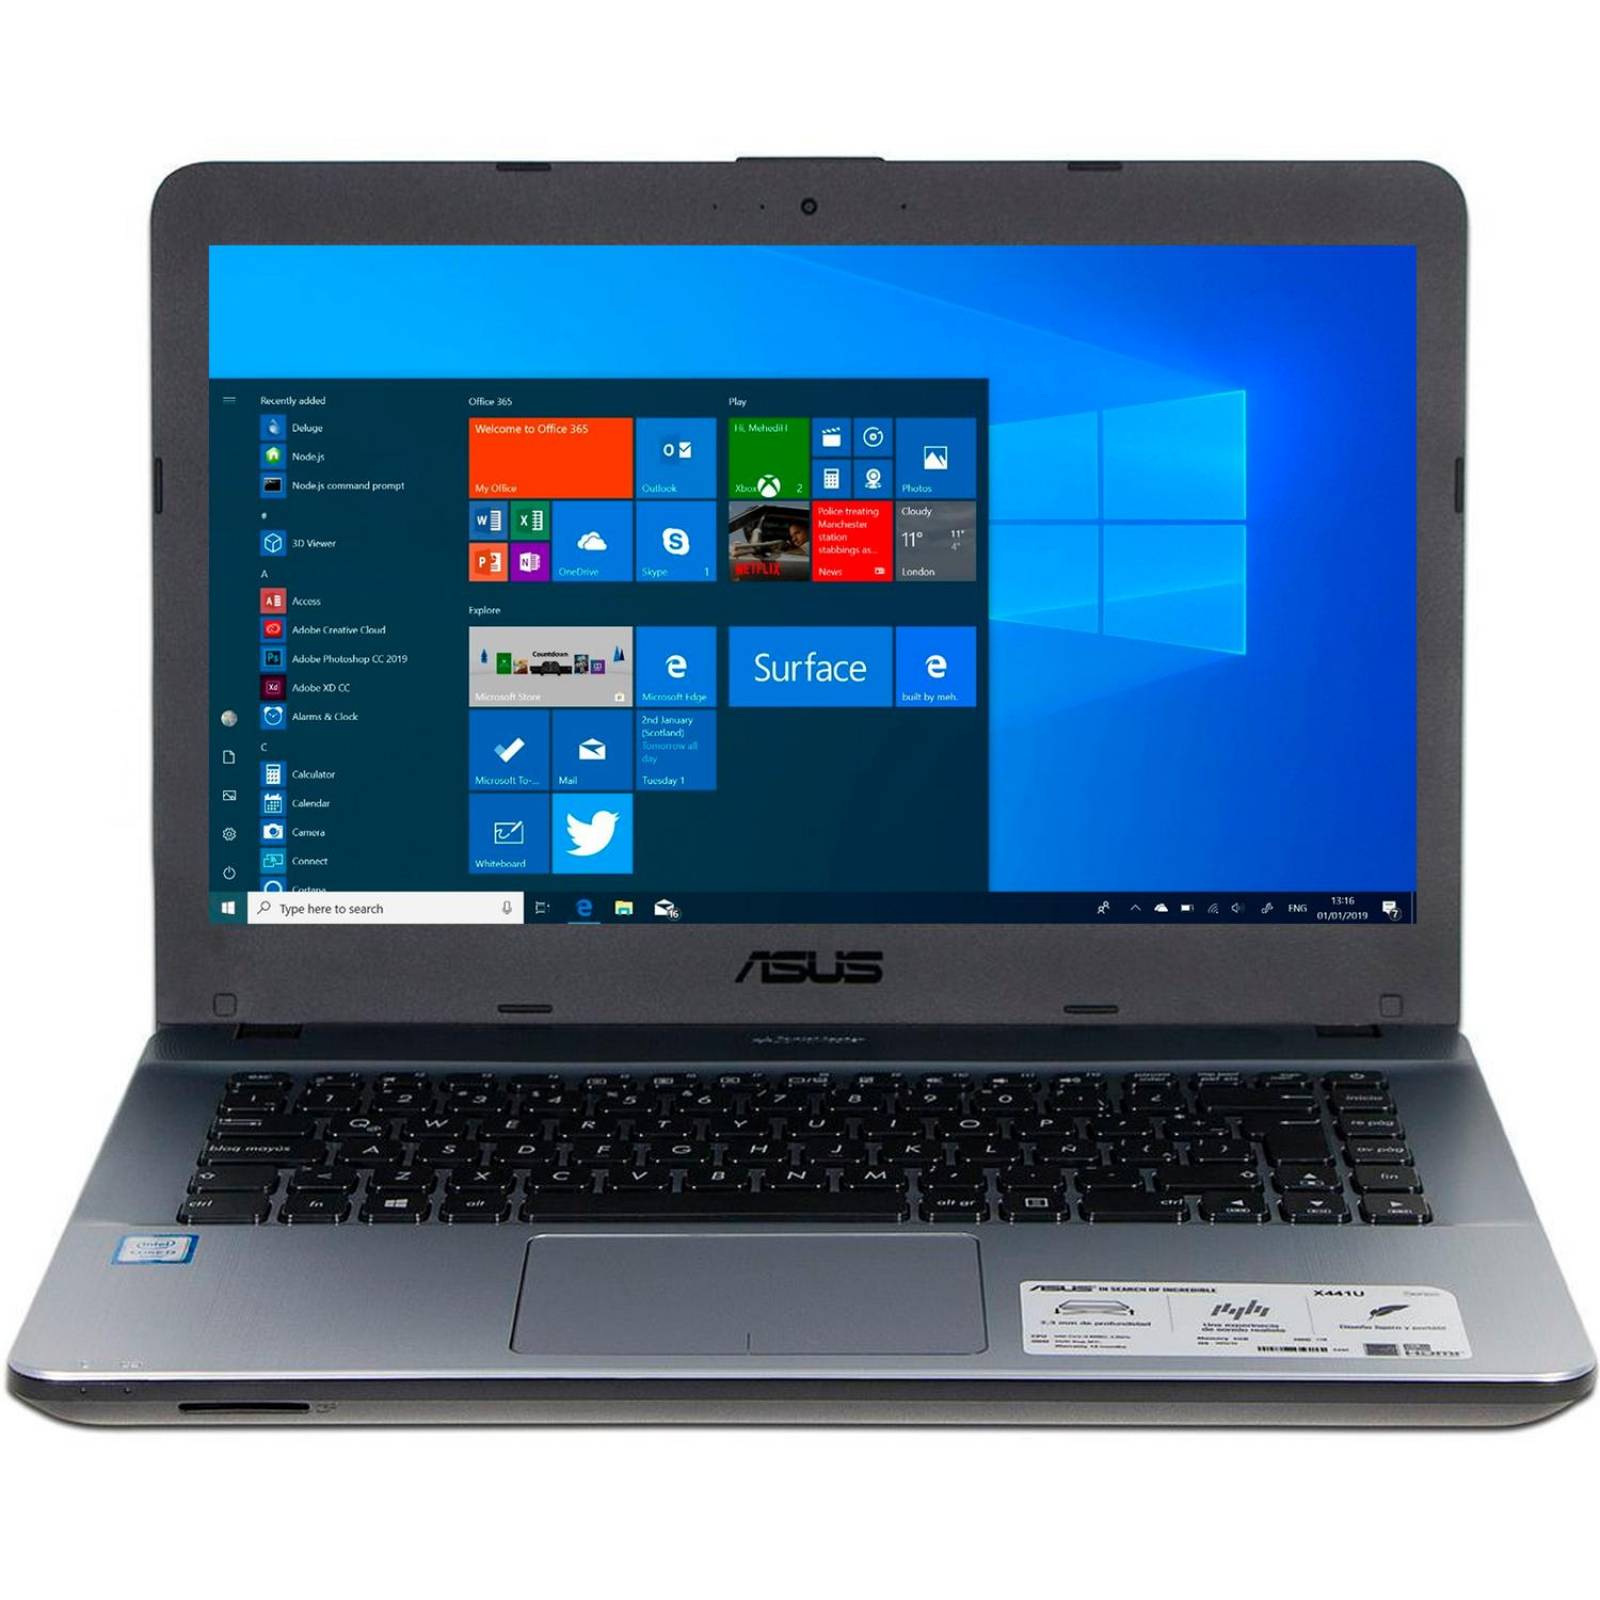 Laptop ASUS ViviBook Max X441UA I3 6006U 4Gb 1TB 14 Win10 Silver X441UA-WX086T  ReAcondicionado 